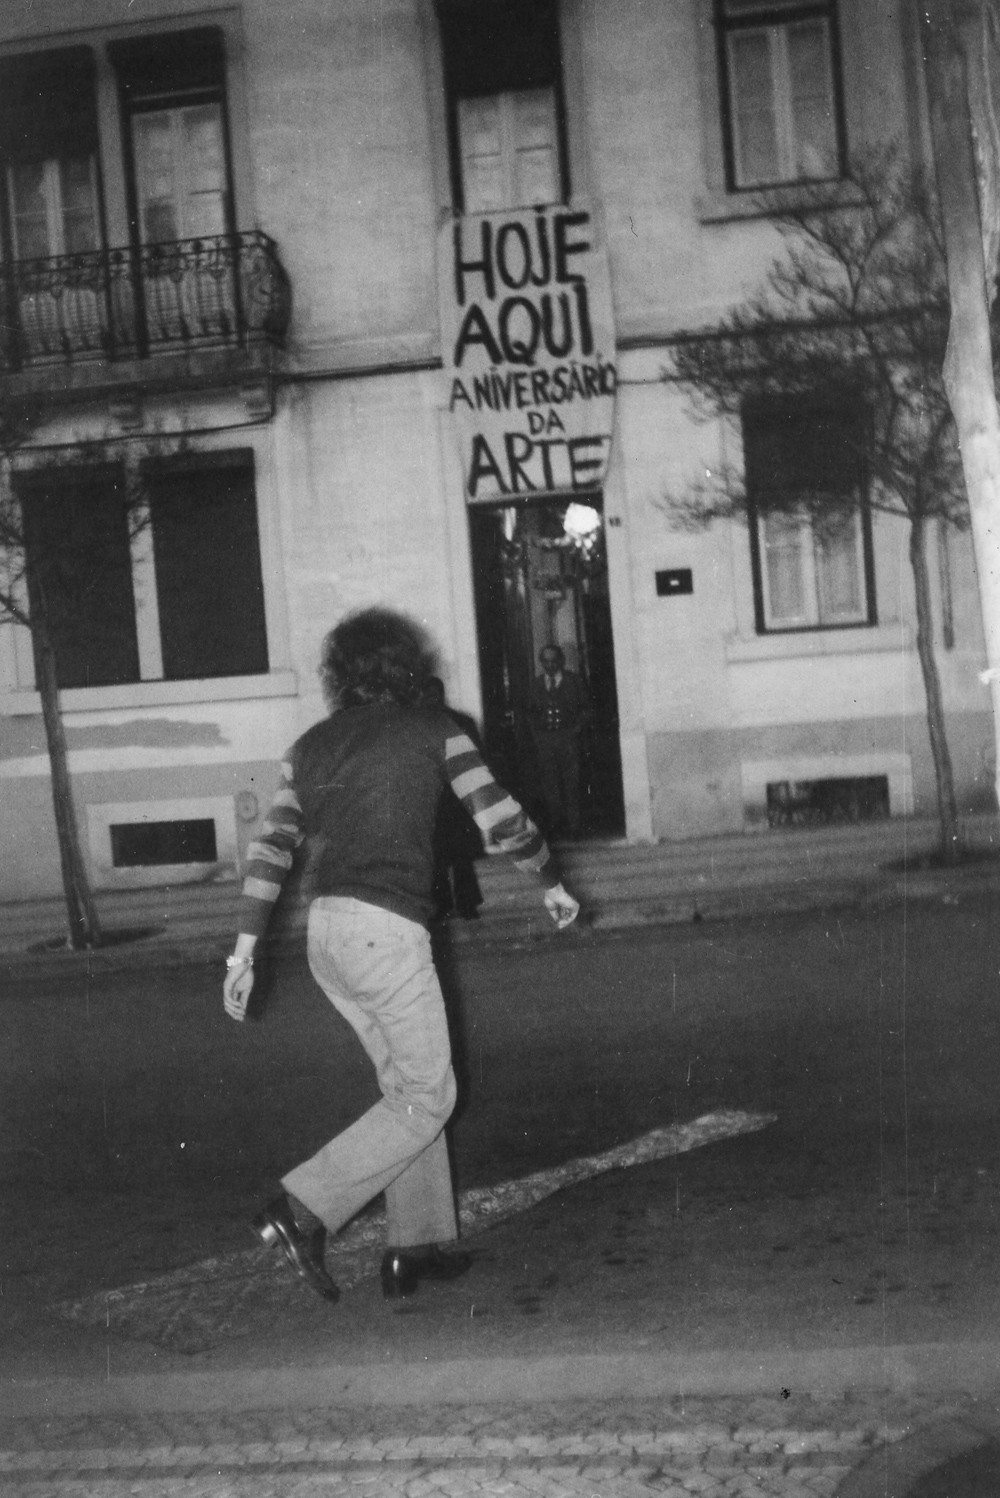  Aniversário da Arte, CAPC, 1974. Performance de Albuquerque Mendes. 